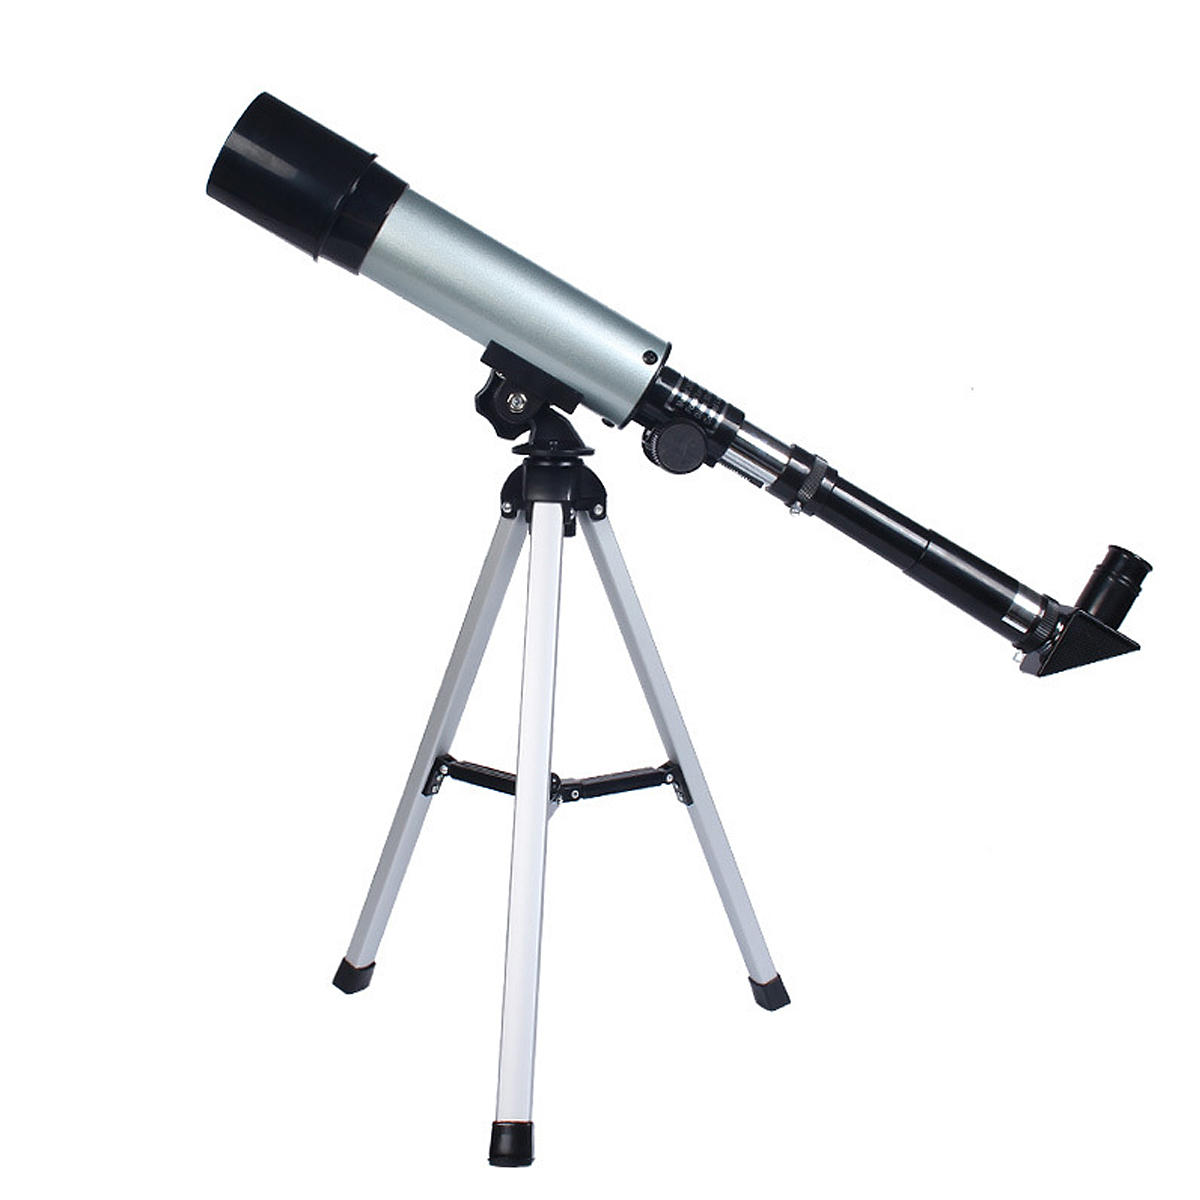 Refractieve astronomische telescoop F36050 90X met 90° hemelspiegel. Duidelijk beeld.